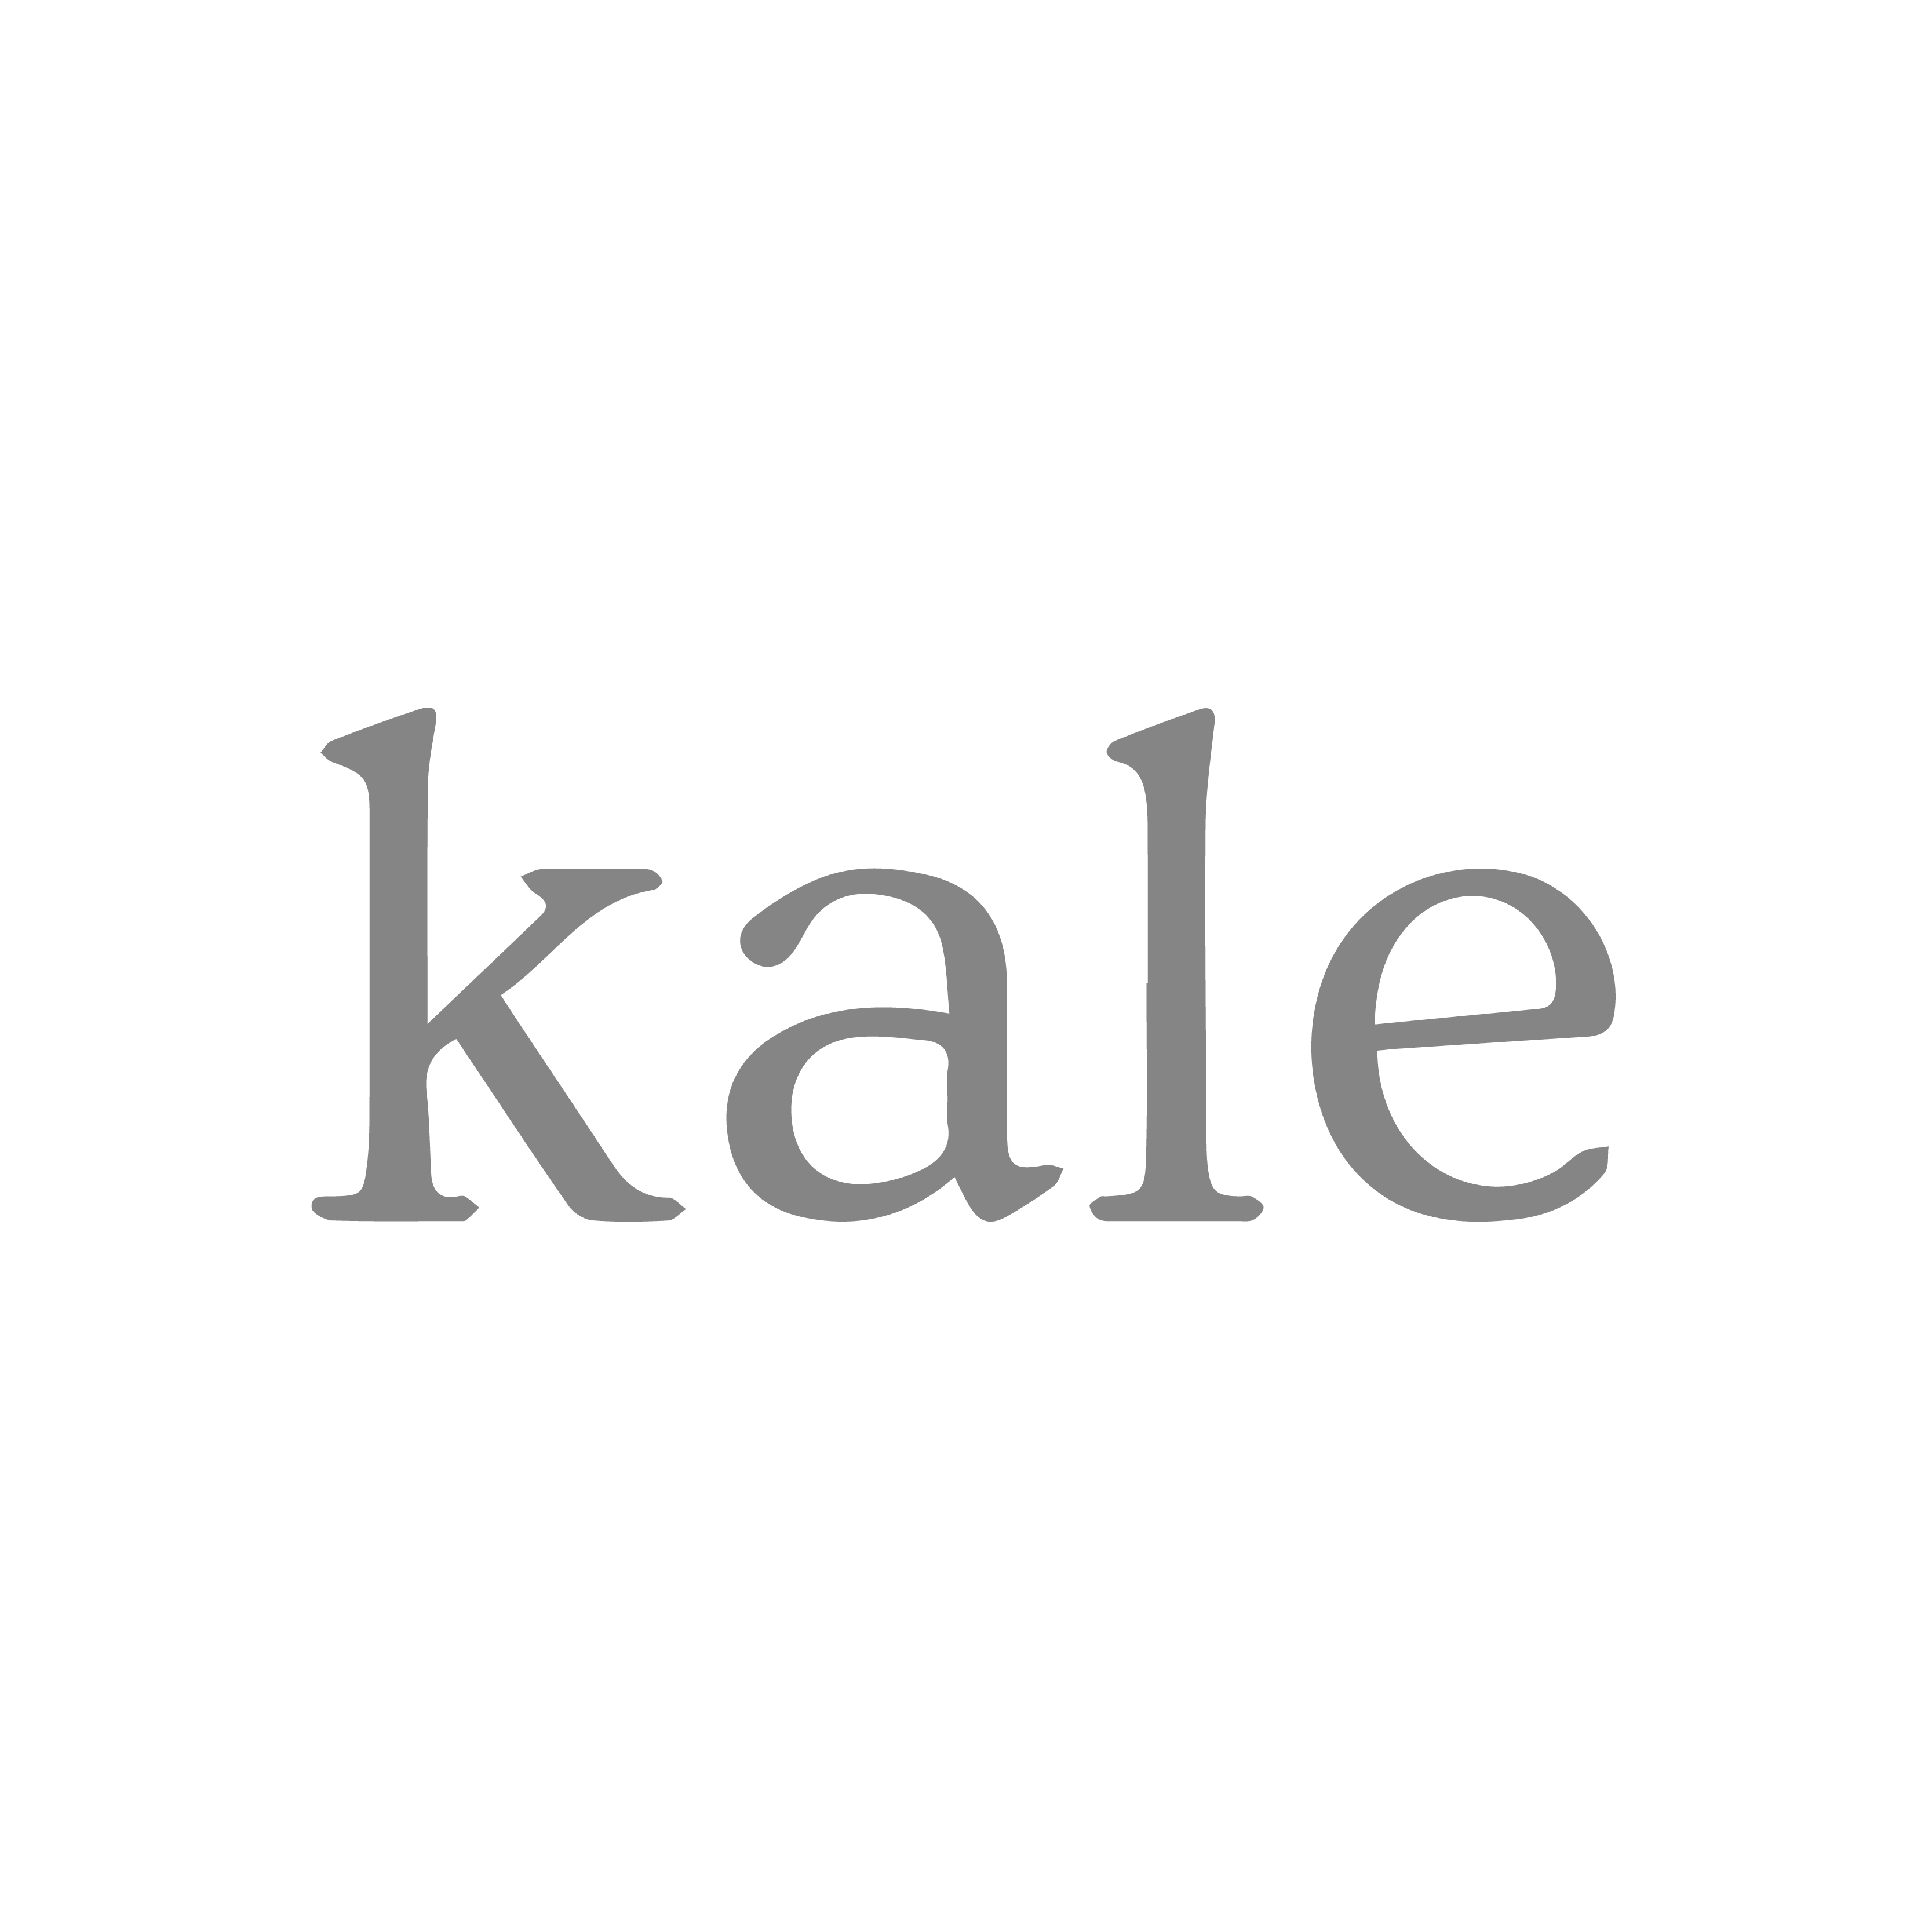 Logos jean agencia de publicidad y marketing Kale